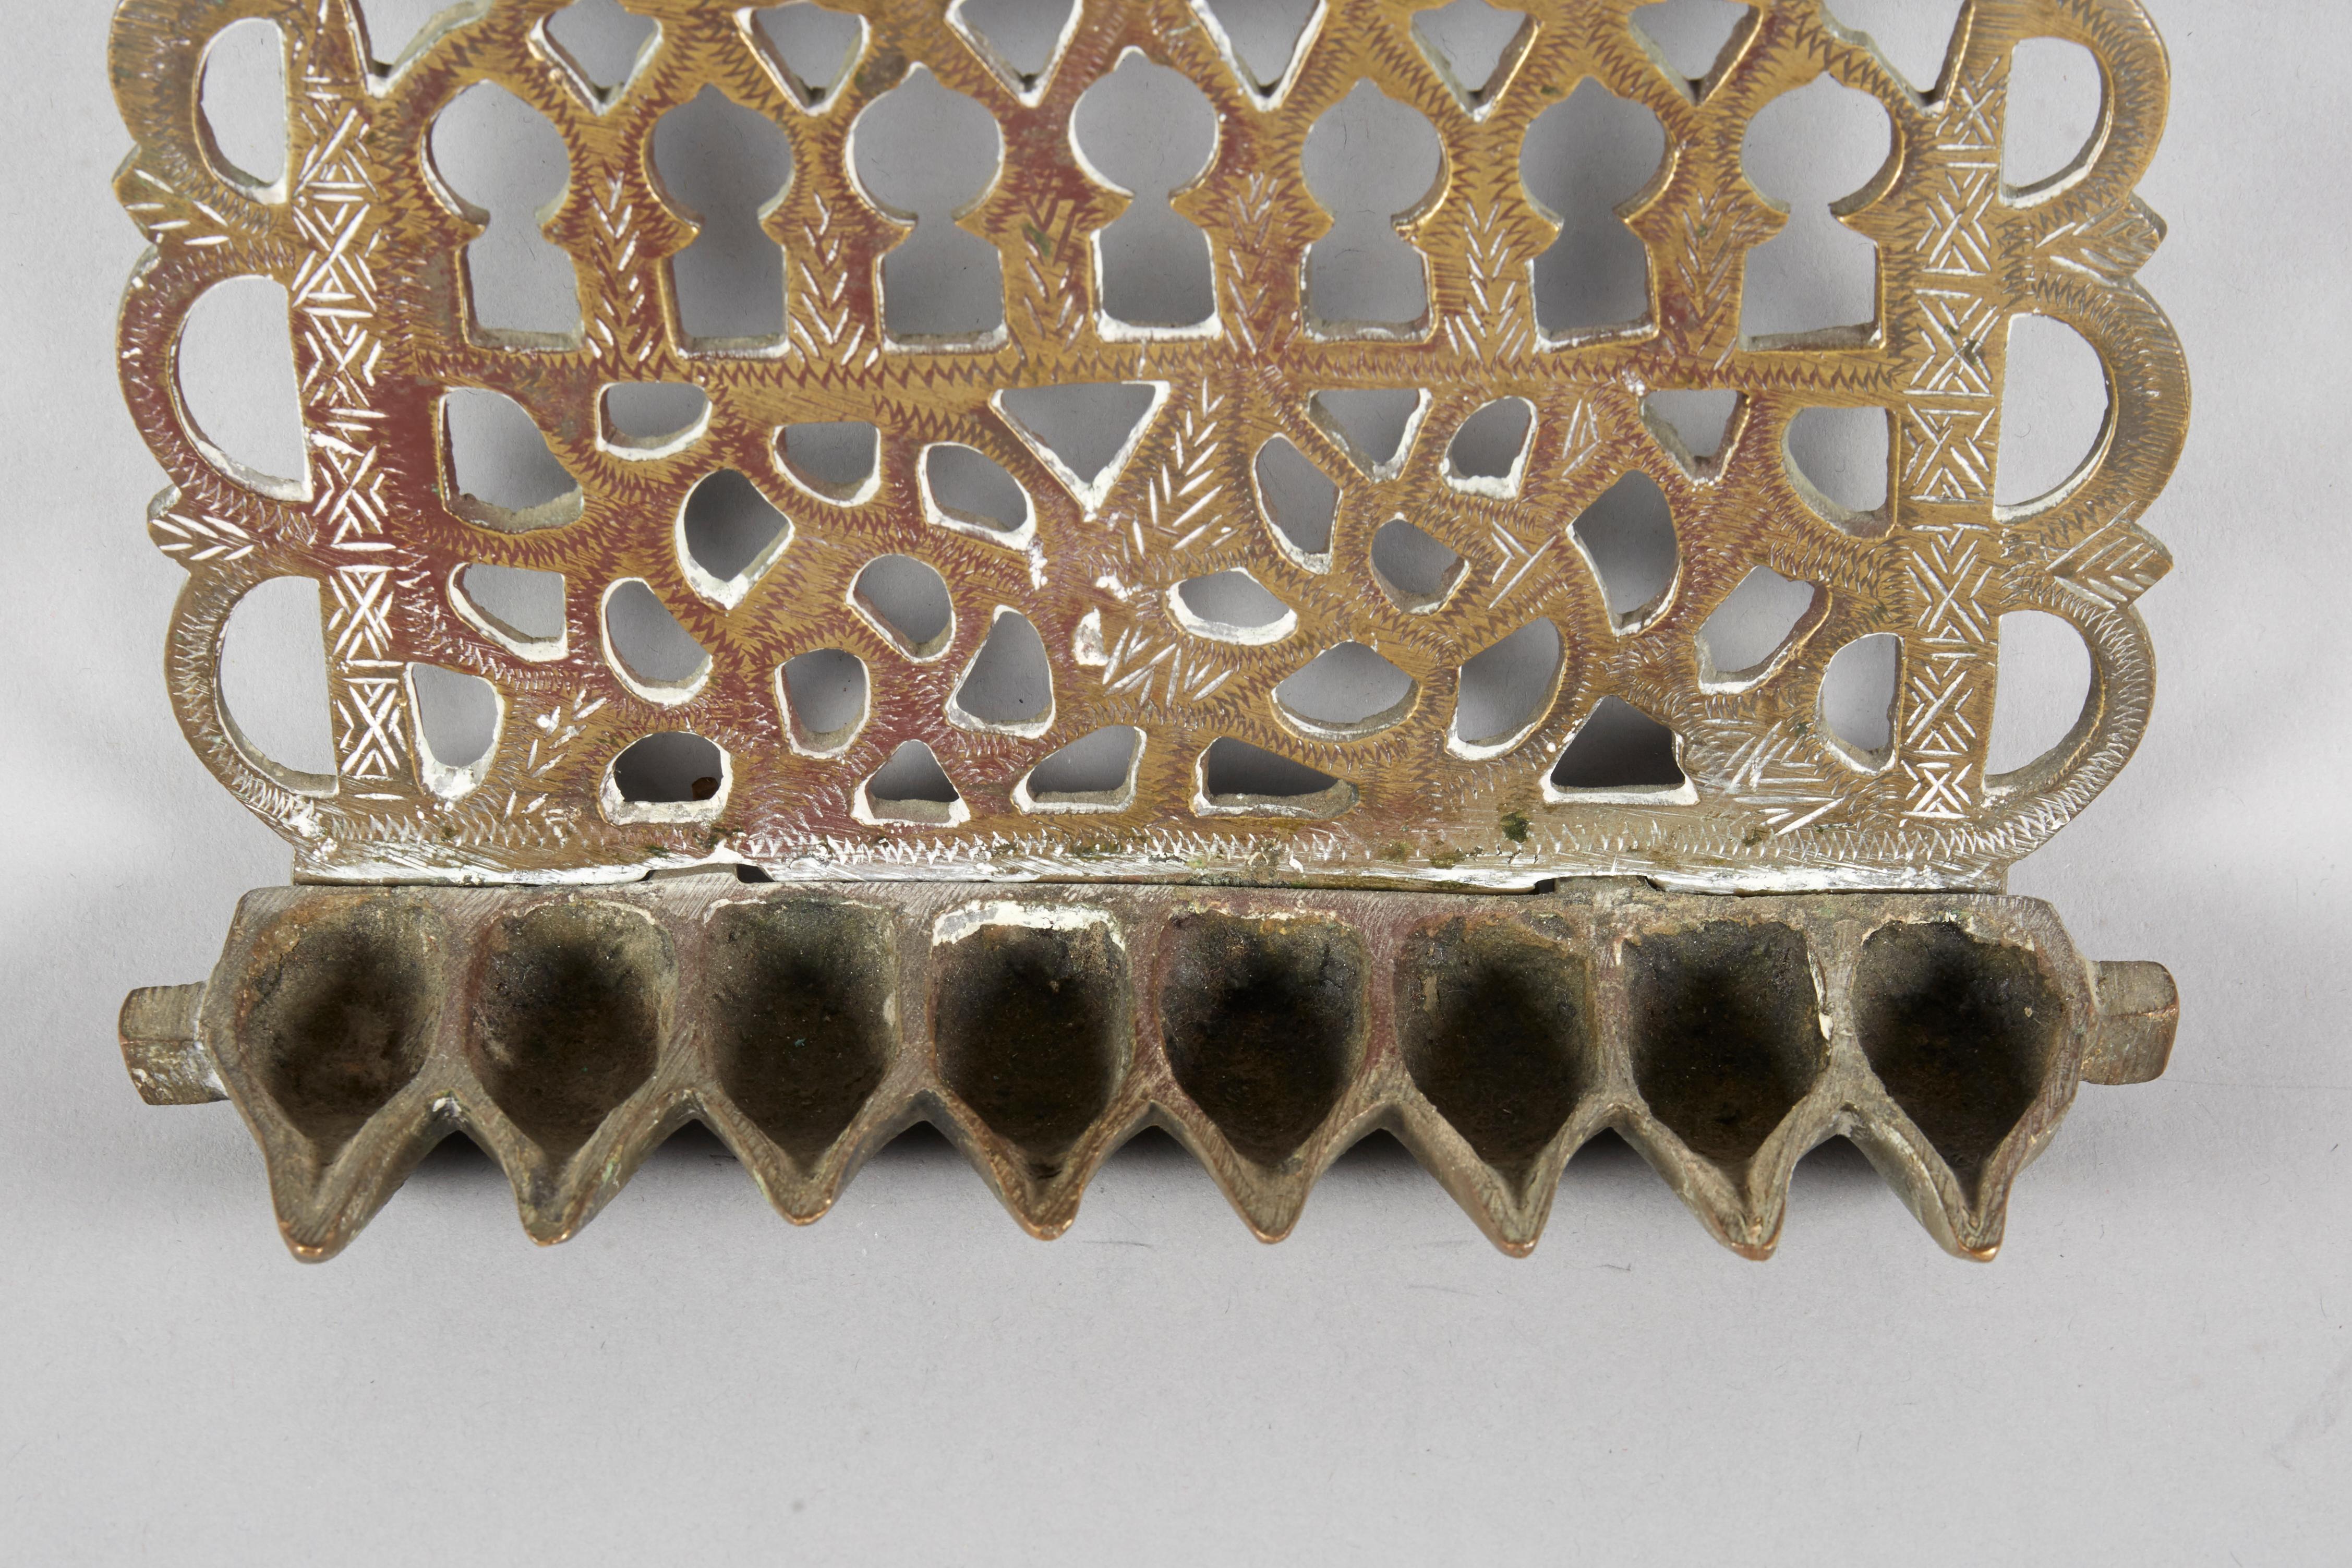 Menorah suspendue en laiton pour lampe de Hanoukka, Maroc, vers 1900. 
Décorée de motifs ajourés, de gravures et de figures d'oiseaux sur les deux faces.
Fabriquée en laiton moulé épais, la plaque arrière est percée et ciselée de rinceaux et d'une